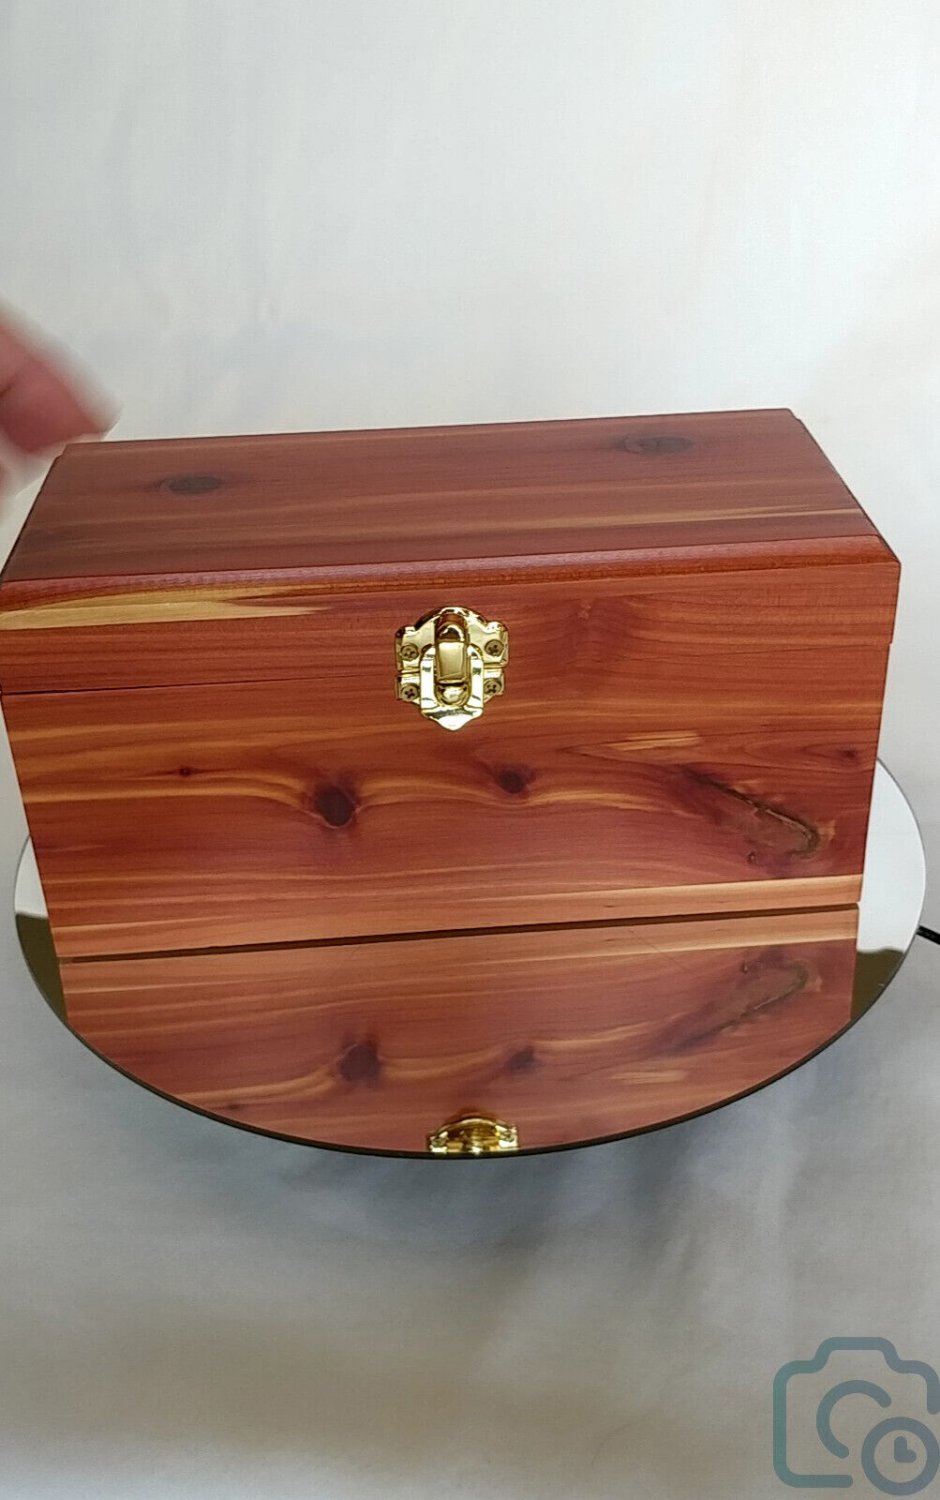 Cedar Wooden Storage Box 8 1/4 " L x 3 7/8" W x 4" H